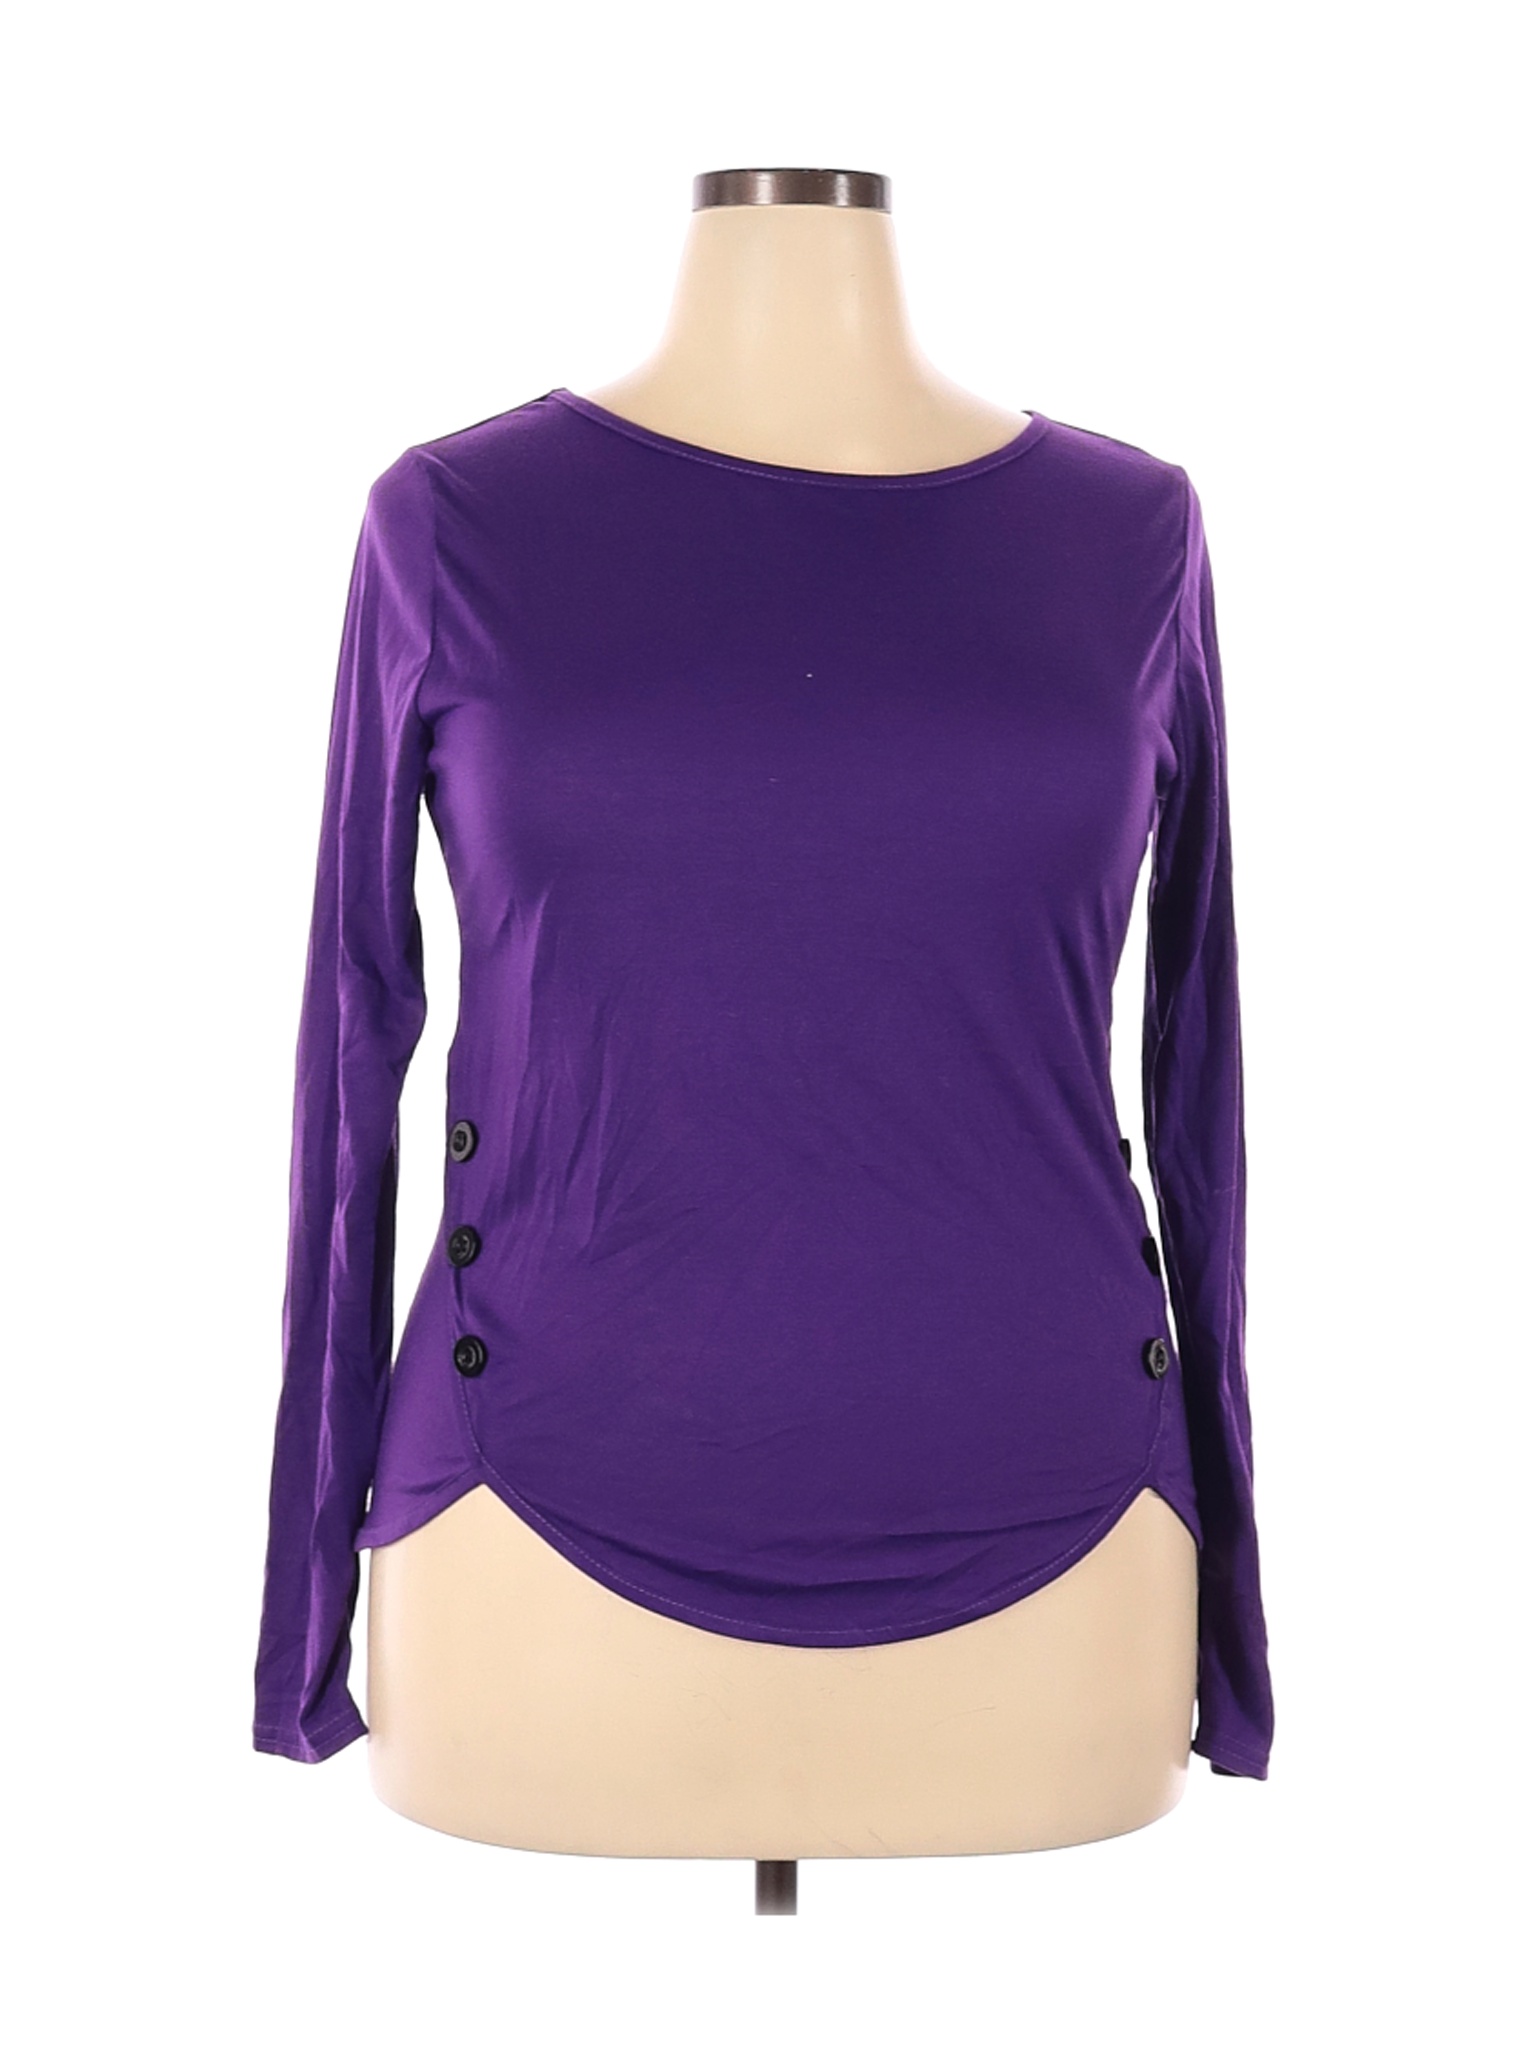 Unbranded Women Purple Long Sleeve Top XXL | eBay